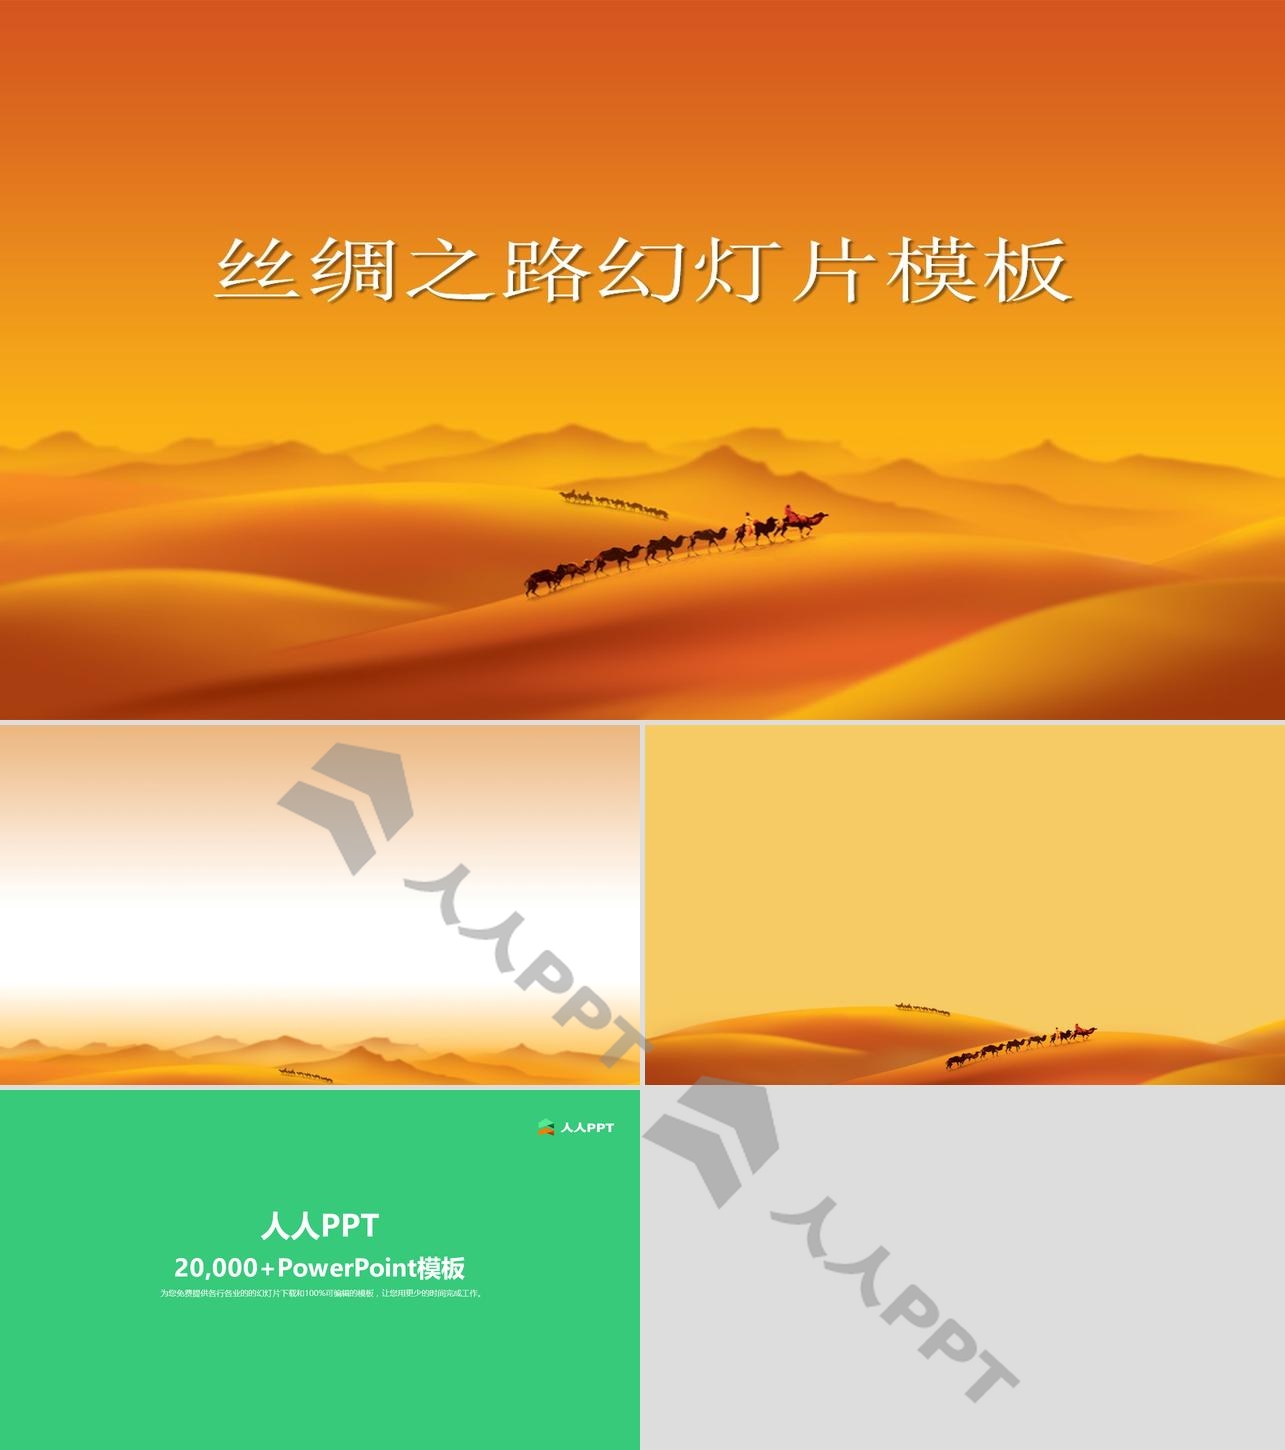 沙漠骆驼撑起的丝绸之路幻灯片模板长图